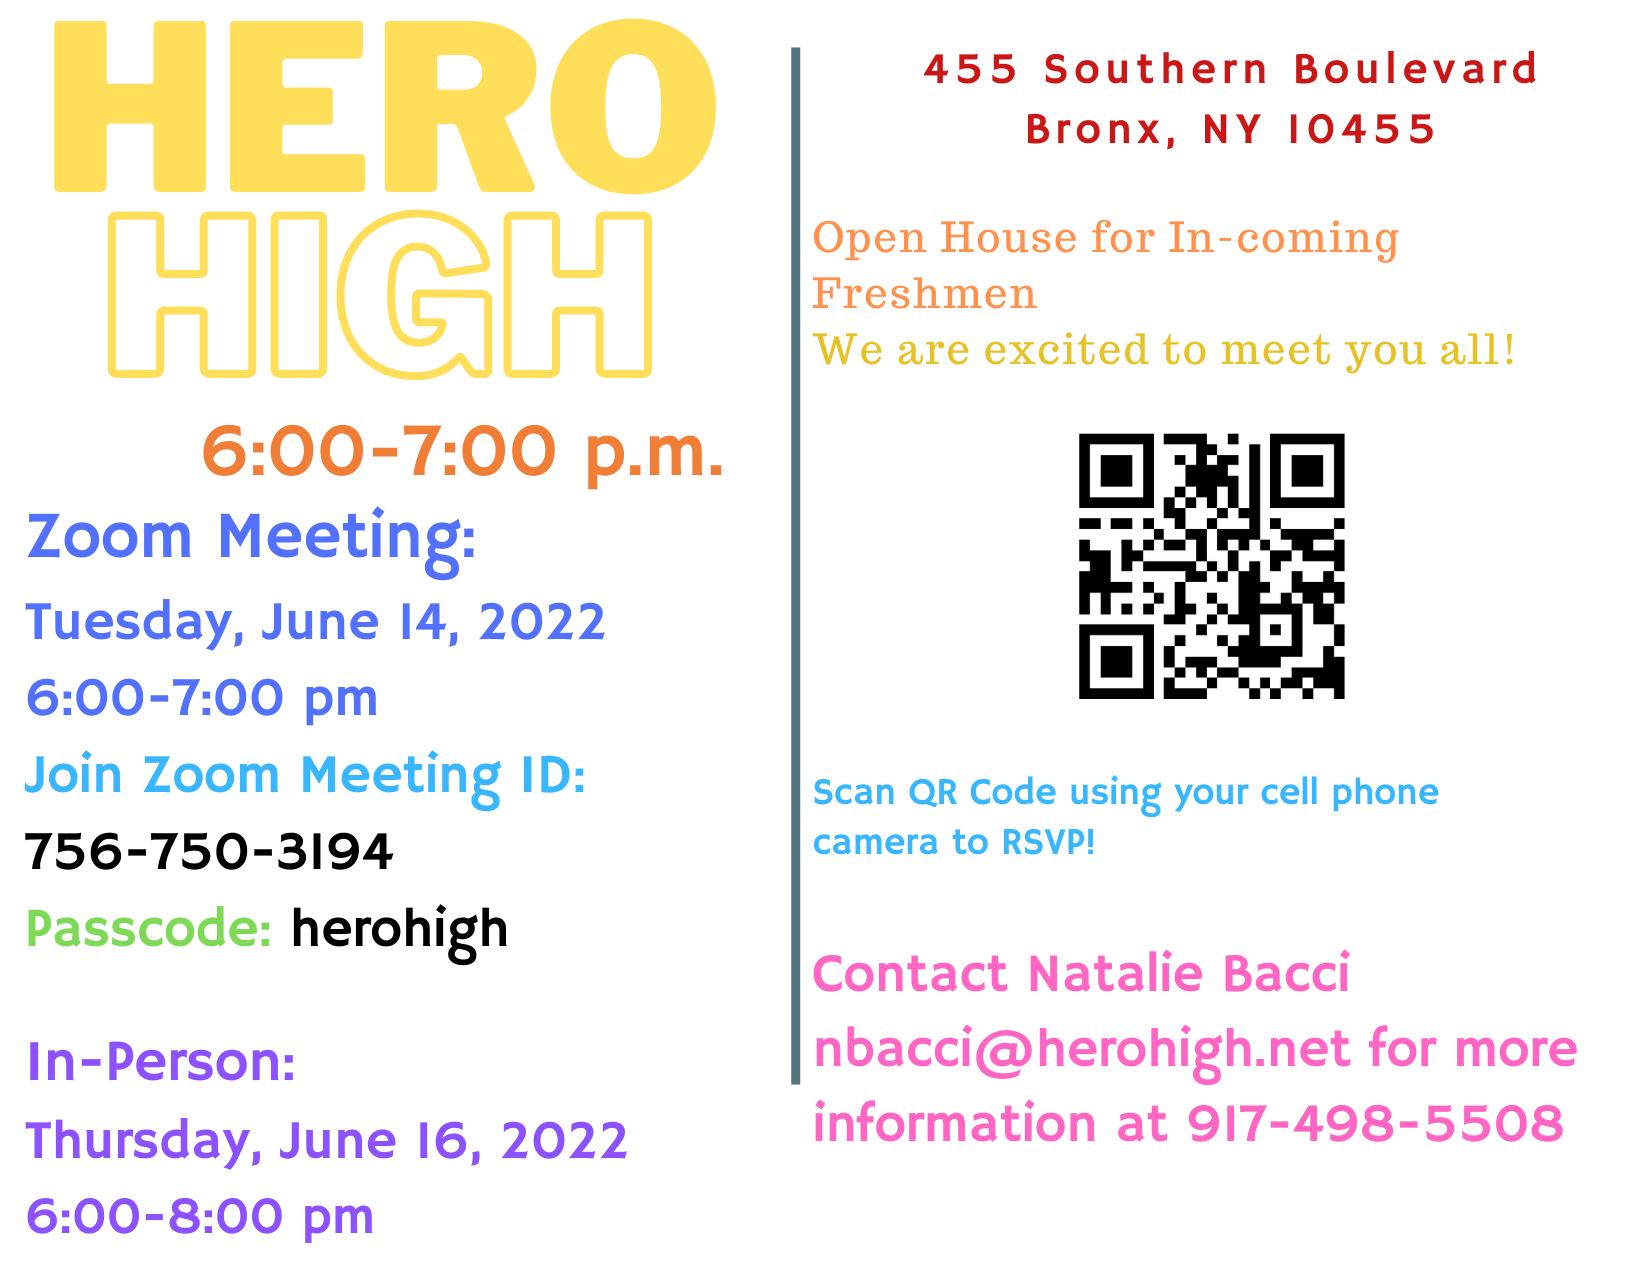 HERO High Freshmen Open House Flyer 2022